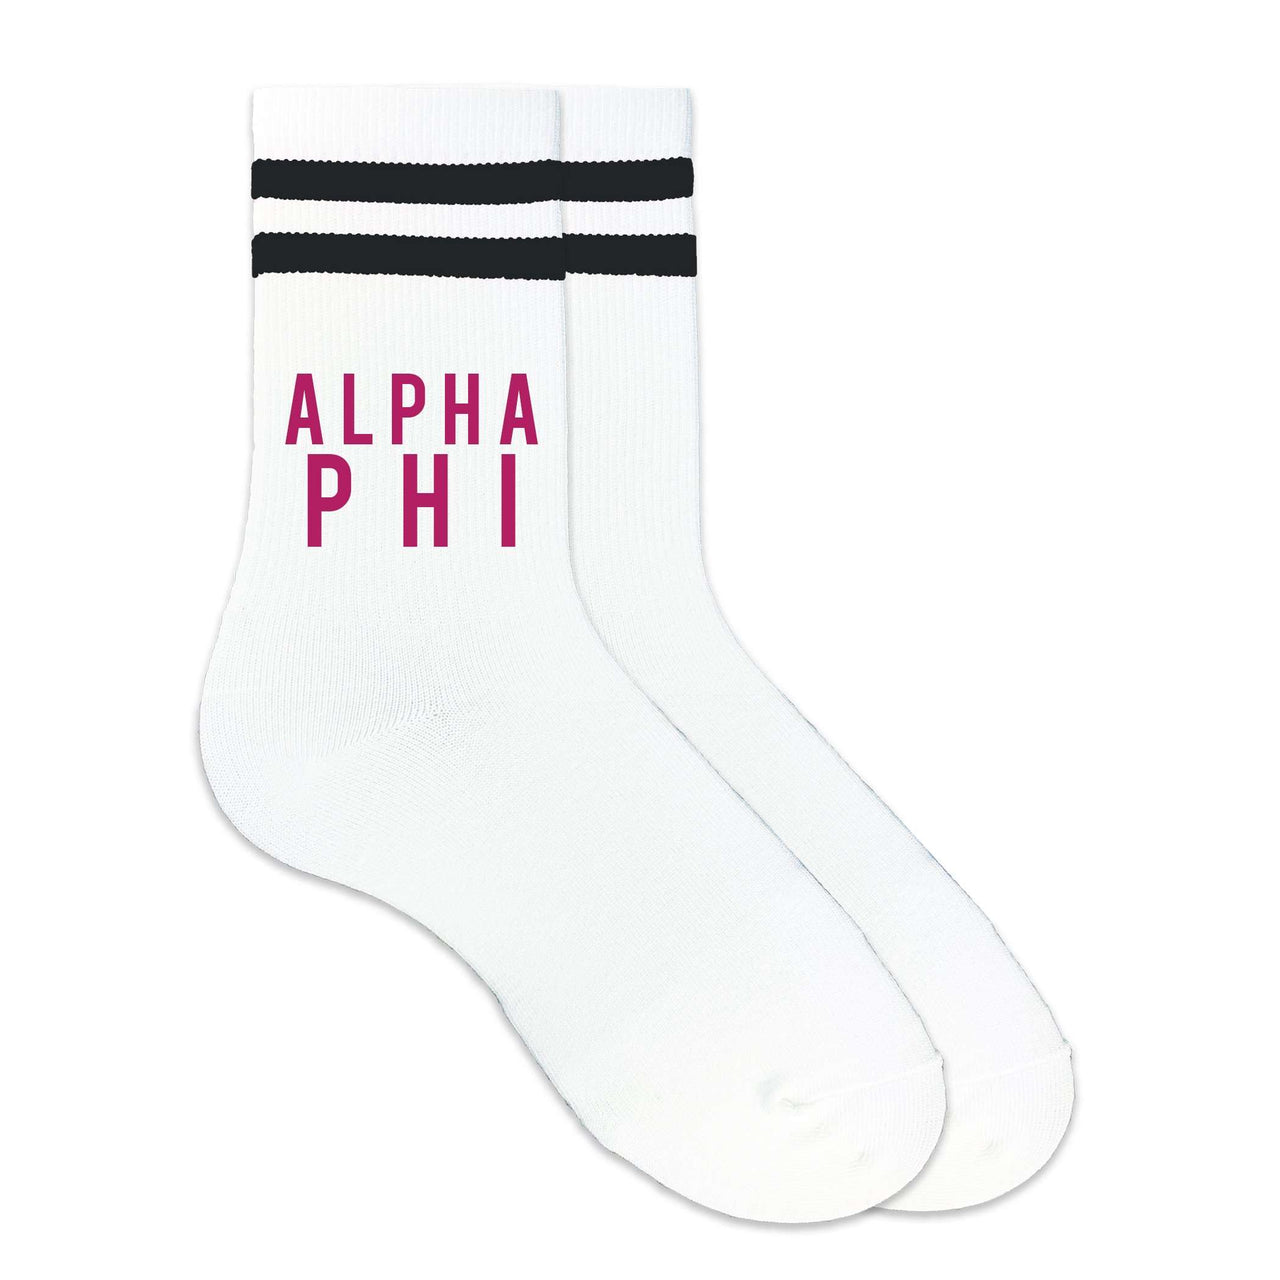 Alpha Phi sorority name custom printed on black striped crew socks